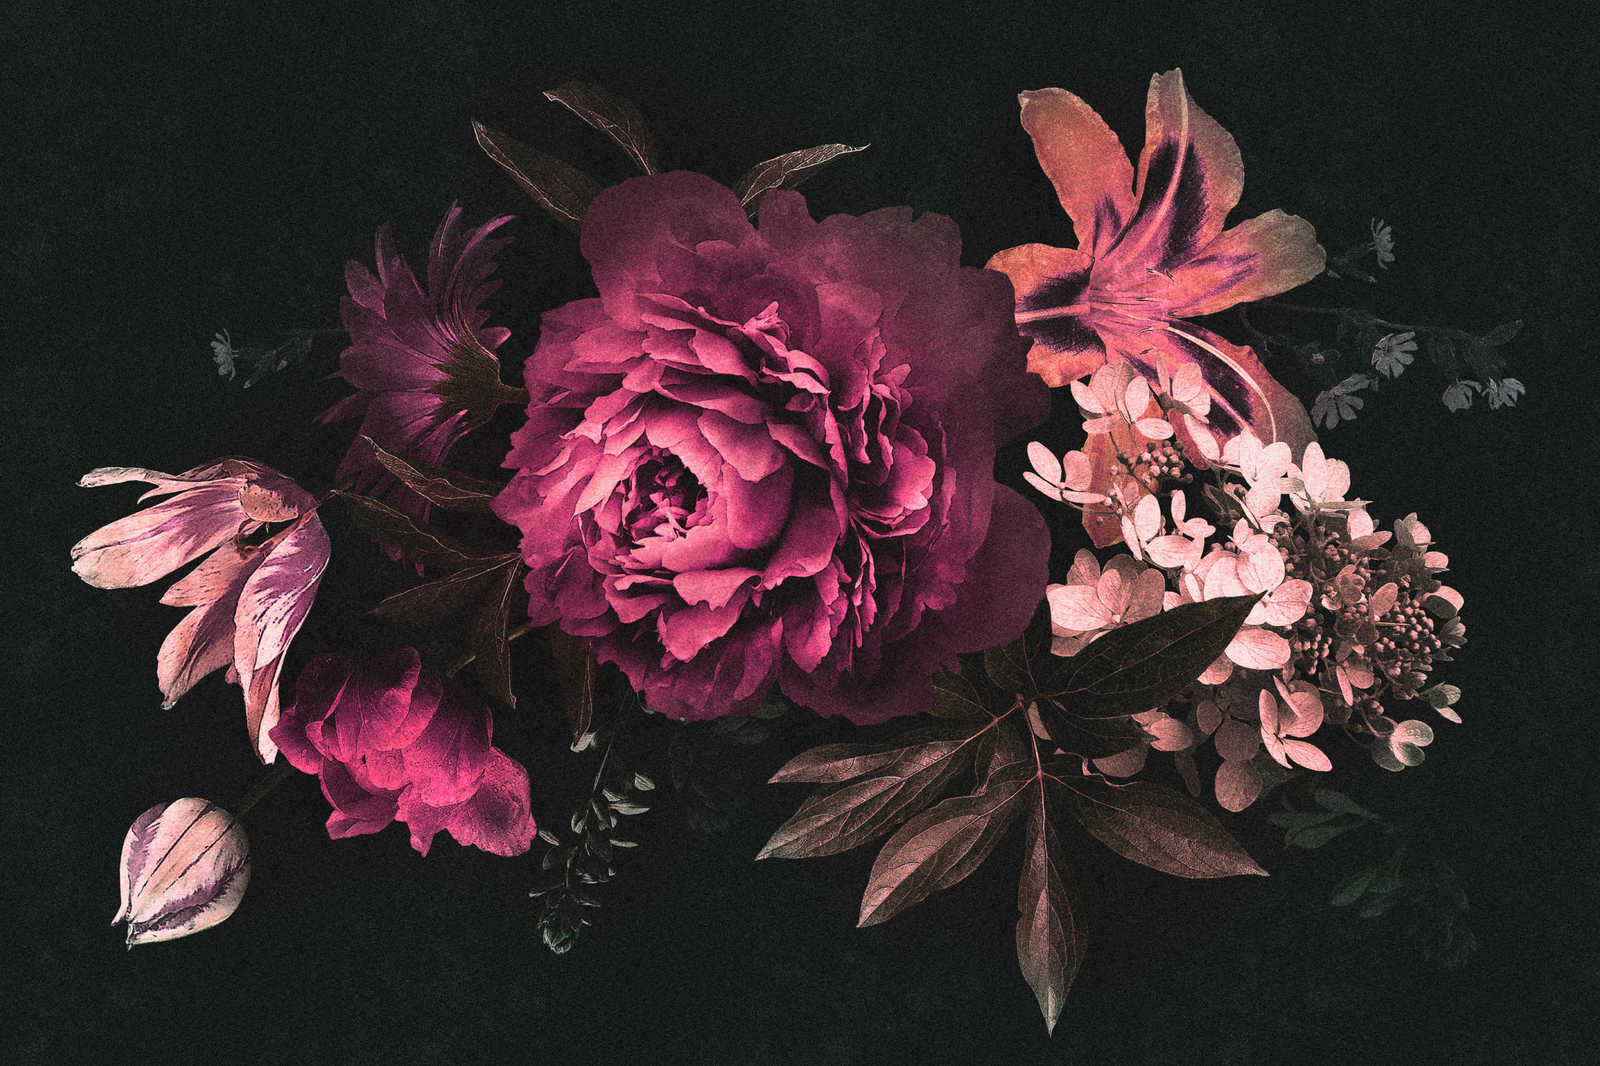             Drama queen 3 - Toile bouquet de fleurs romantique - À structure en carton - 0,90 m x 0,60 m
        